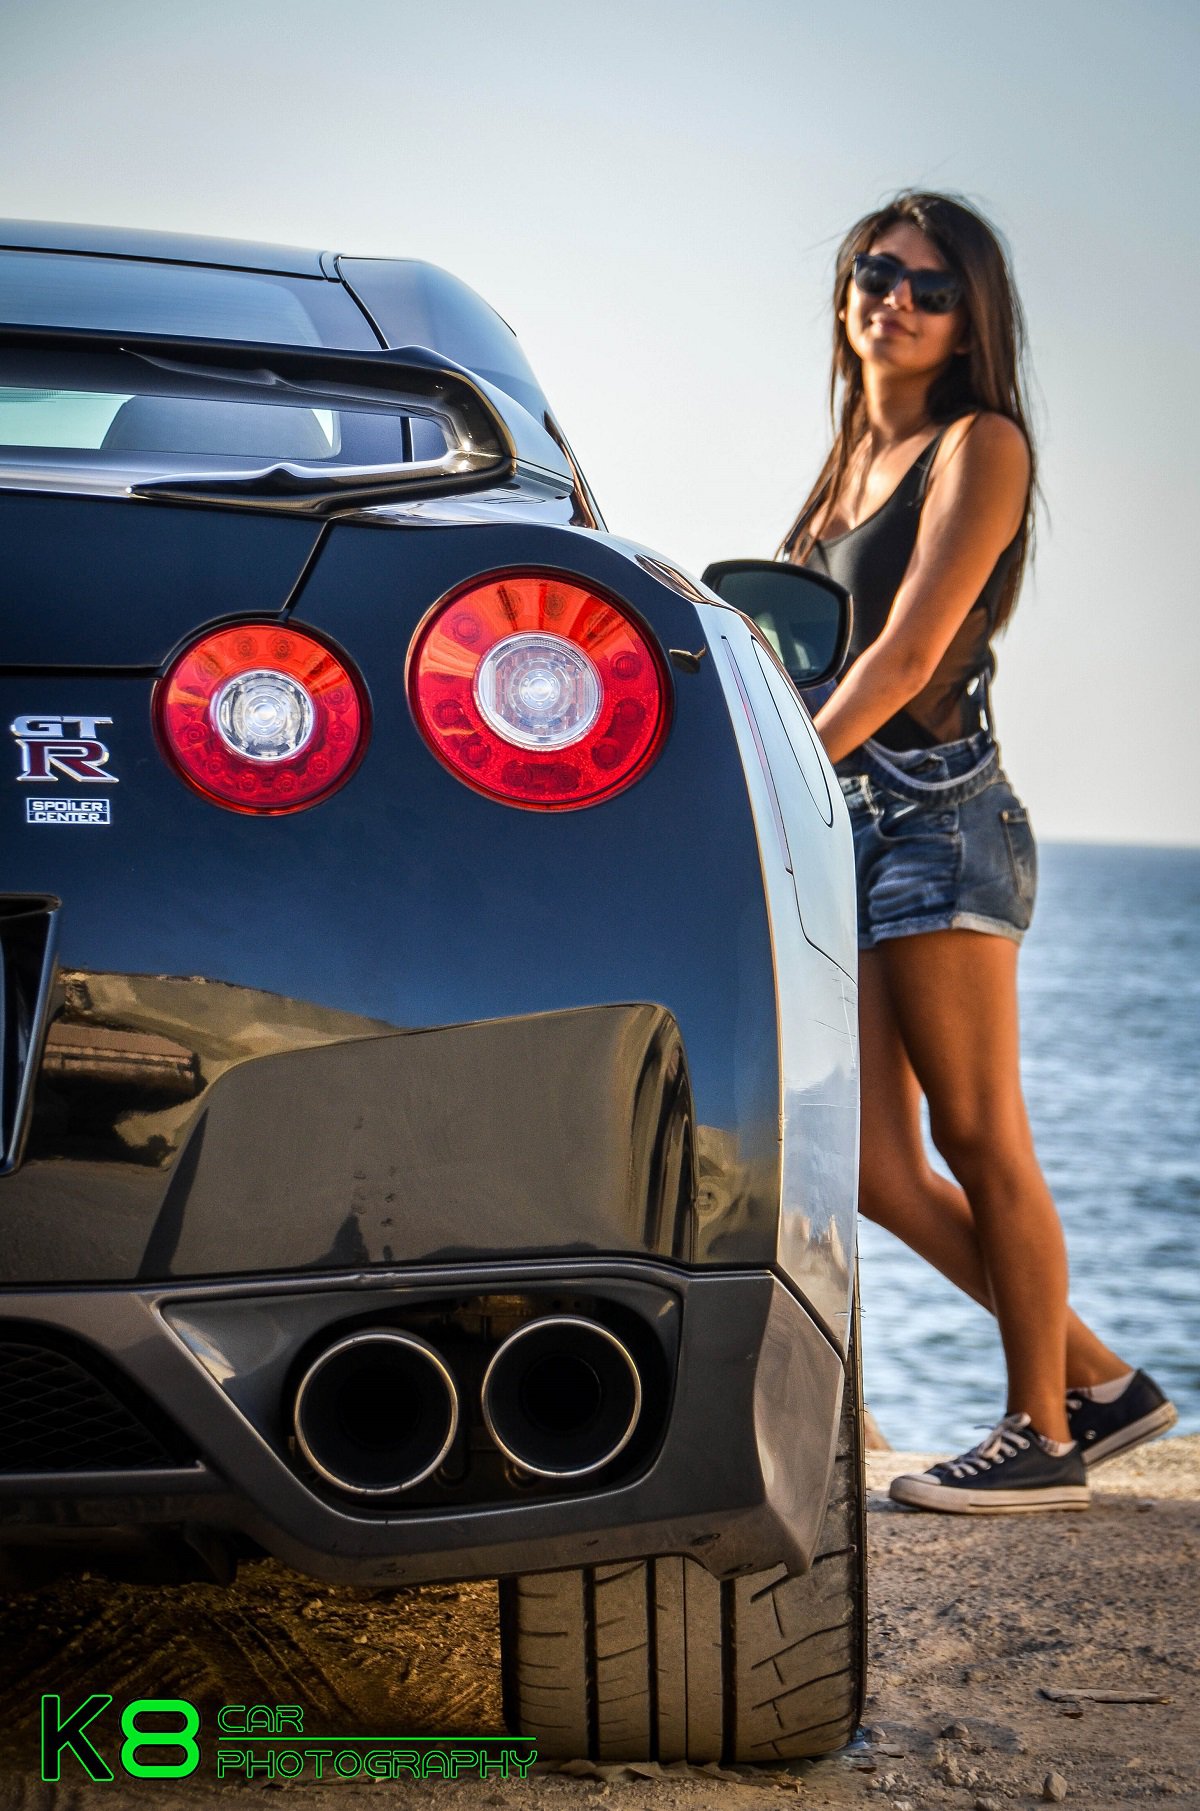 Автомобили и девушки - модель из Ливана и Nissan GT-R